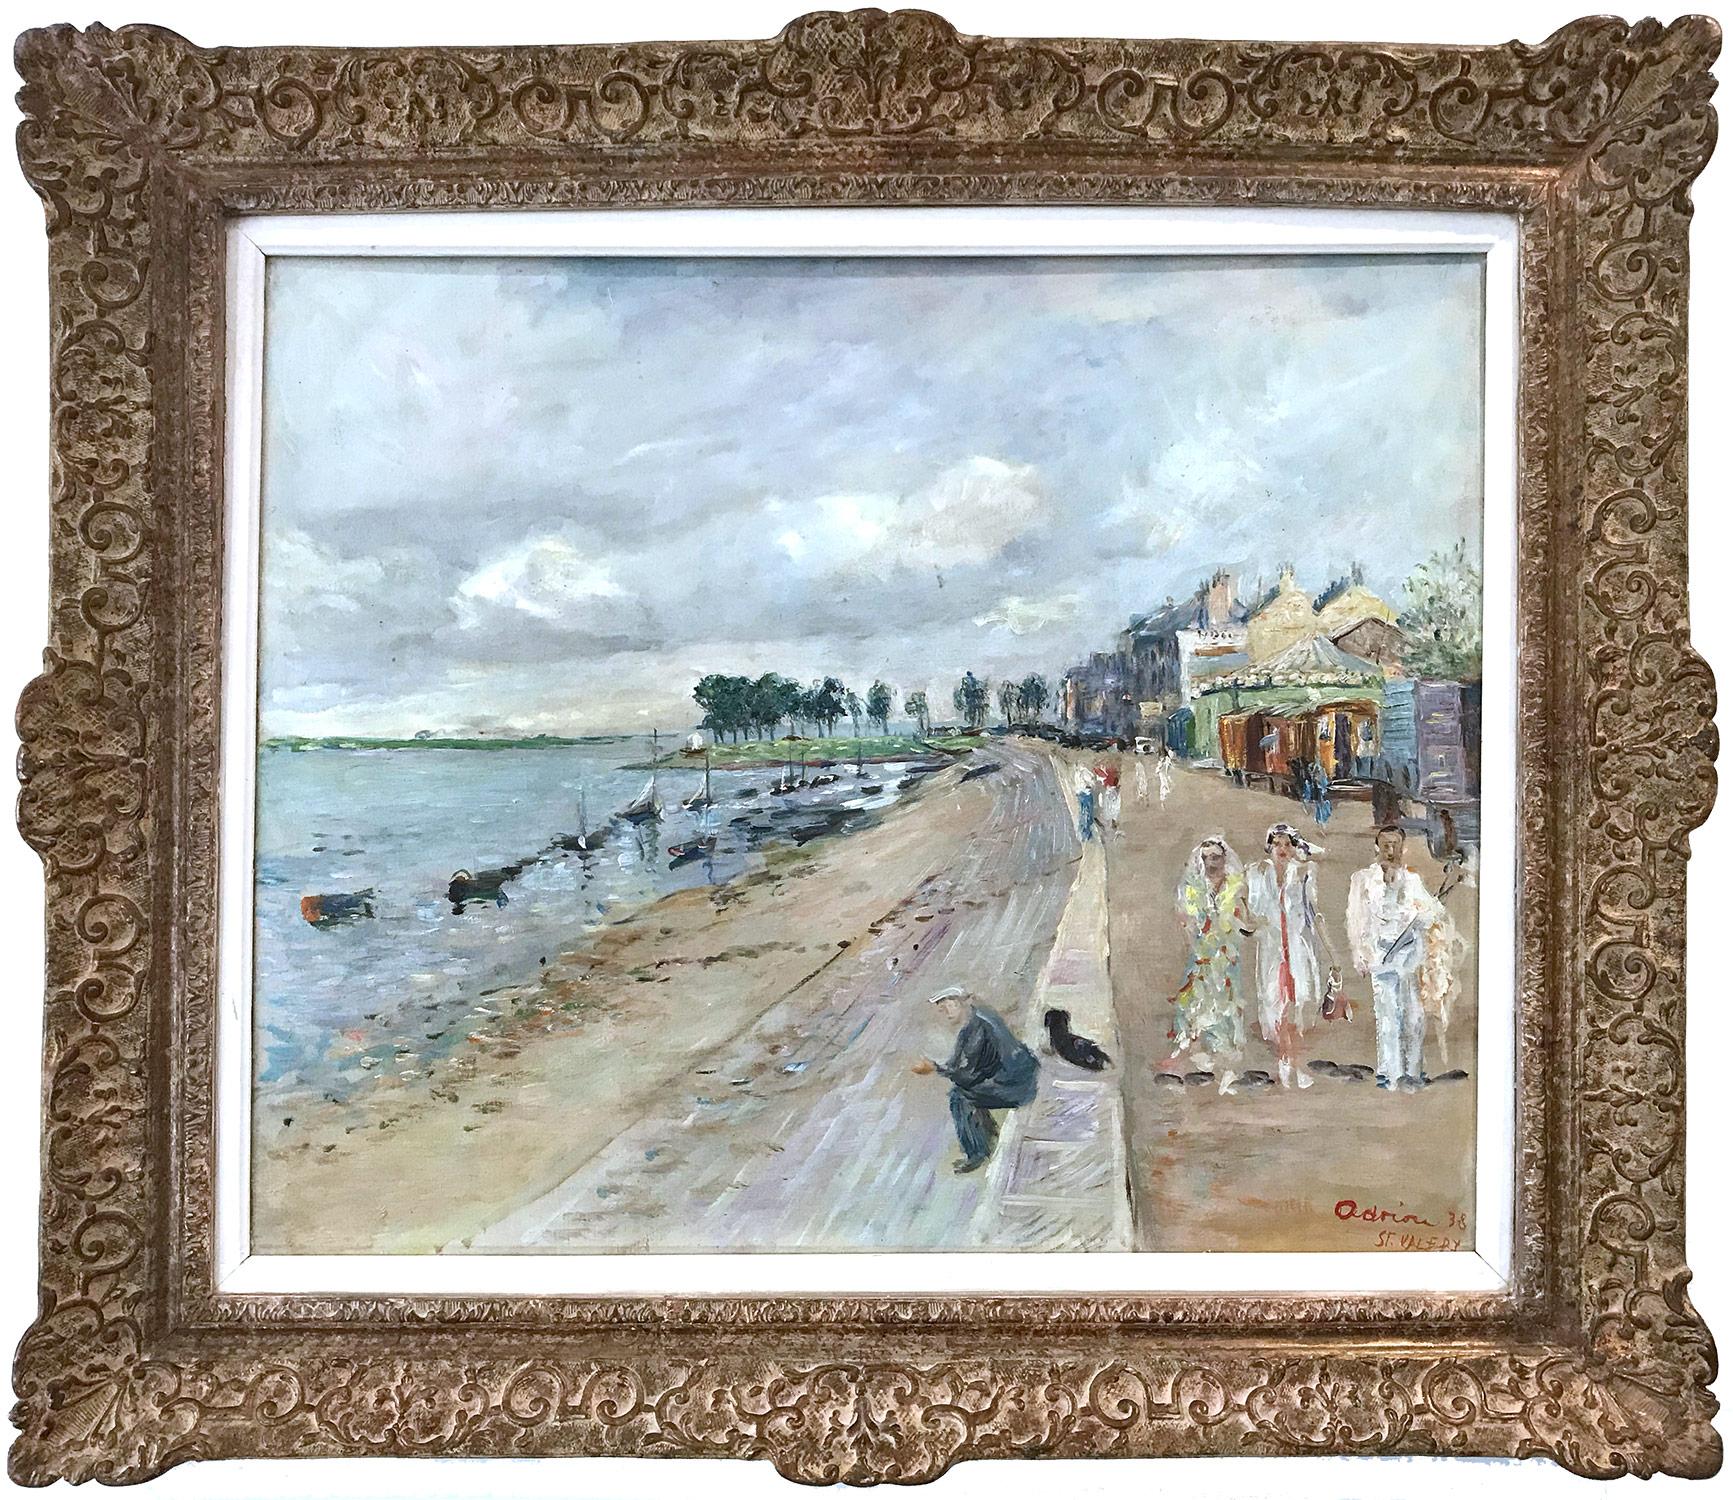 Lucien Adrion Landscape Painting - "Promenade en bord de mer à Saint-Valéry" Post-Impressionist Sea Scape Painting